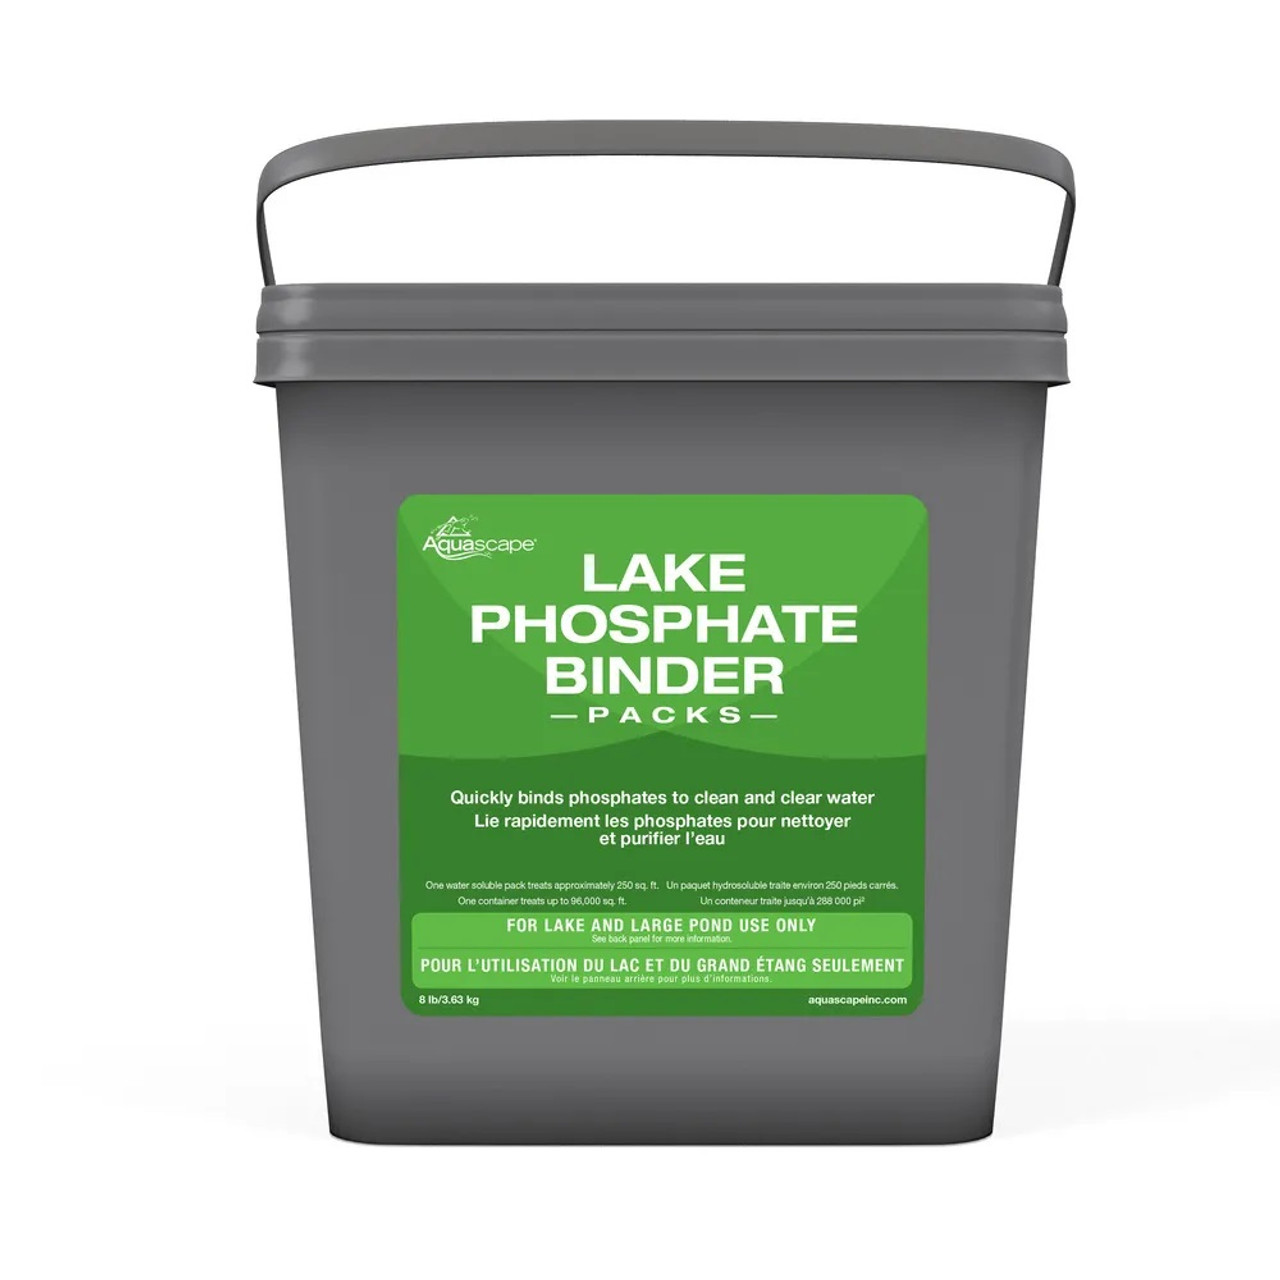 Aquascape Lake Phosphate Binder Packs - 384 pks (8 lbs)